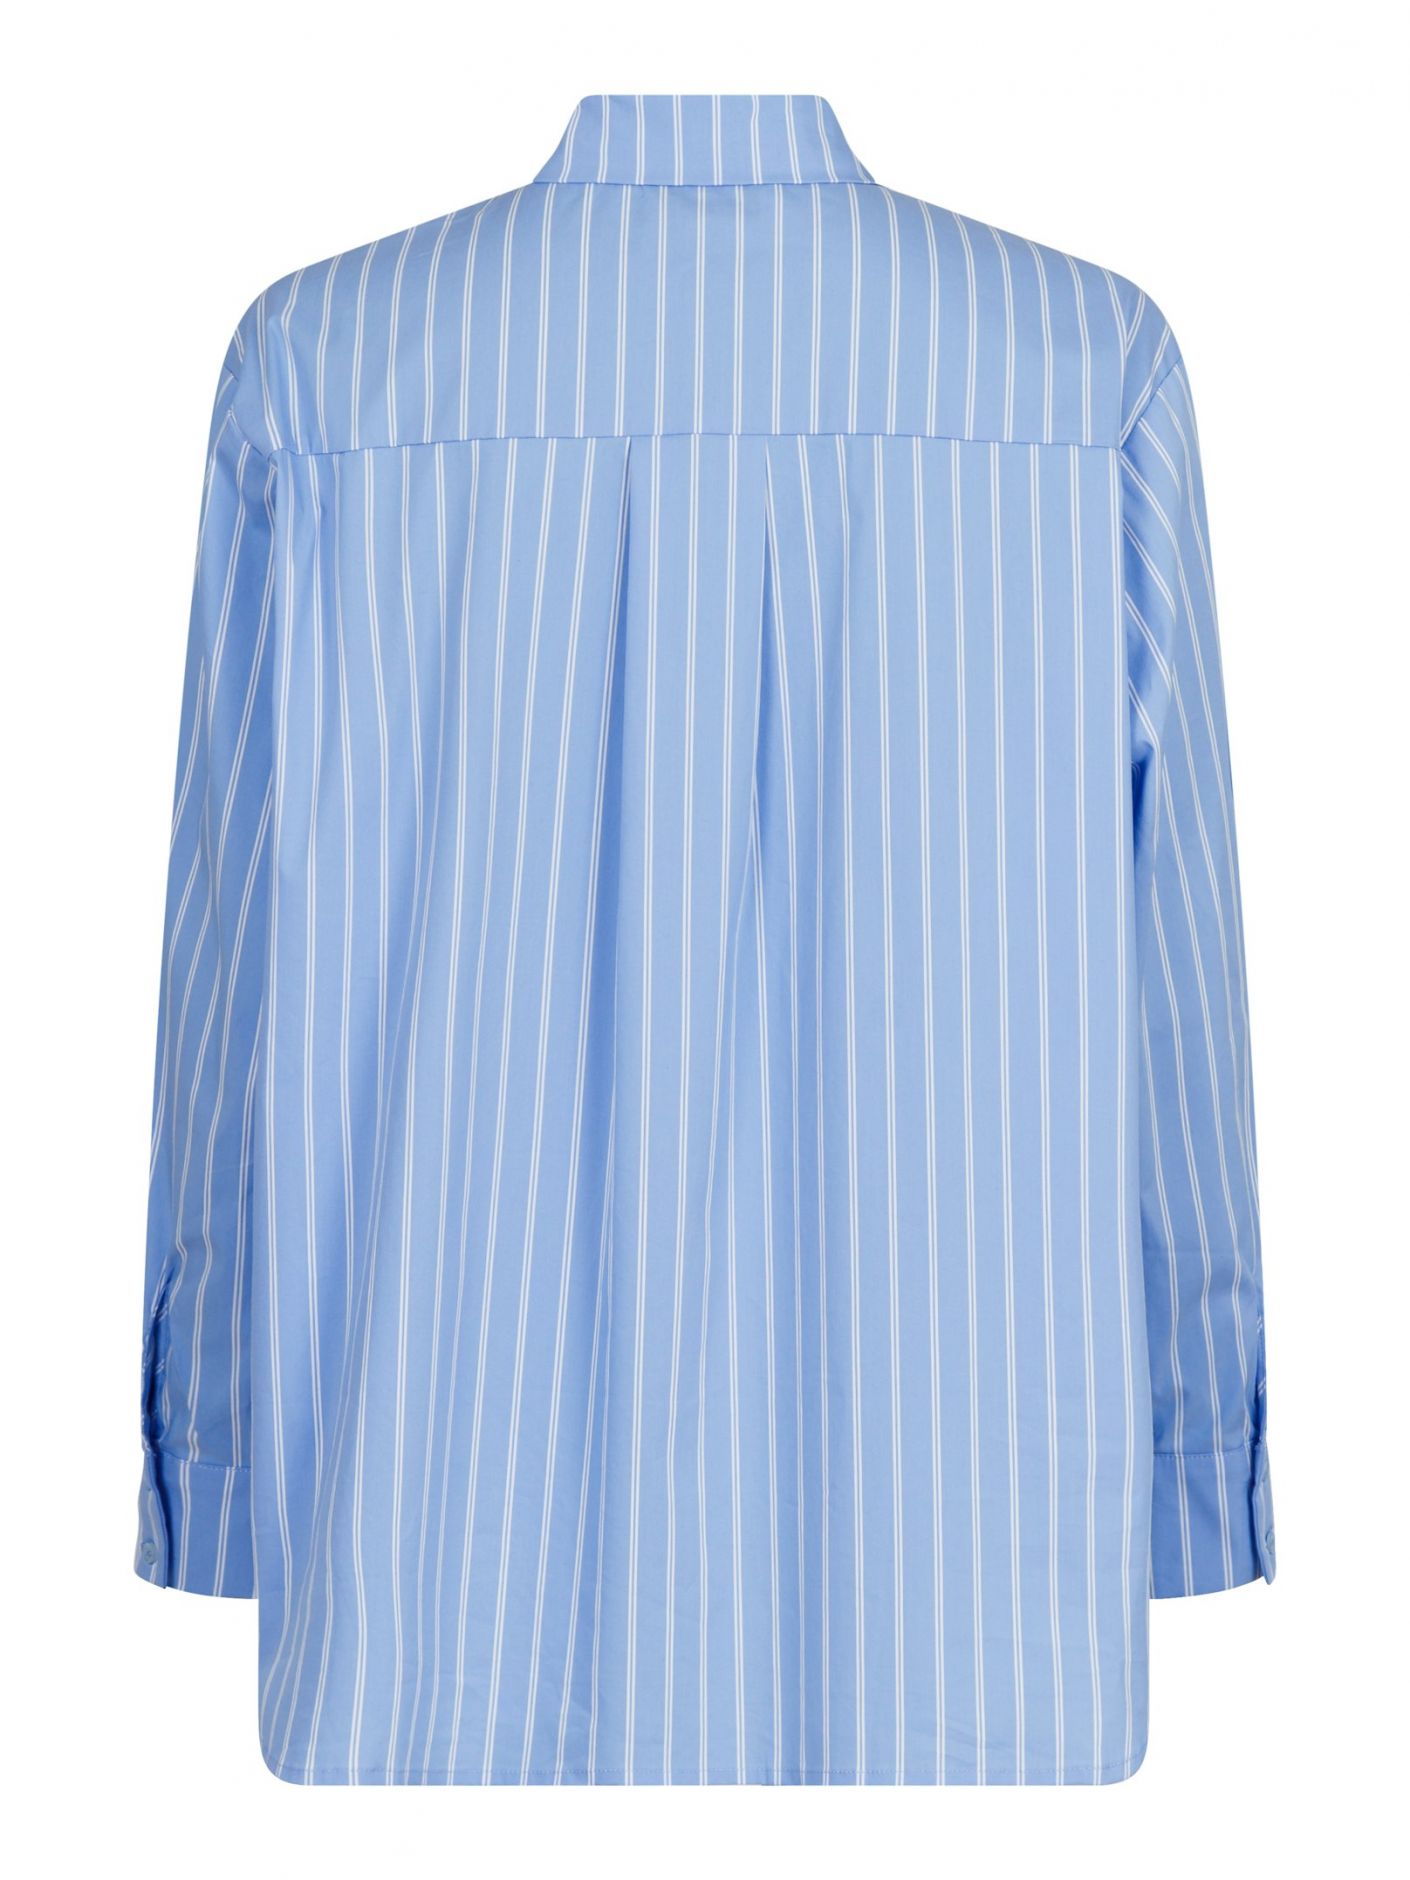 Dalma Double Stripe Shirt Light Blue